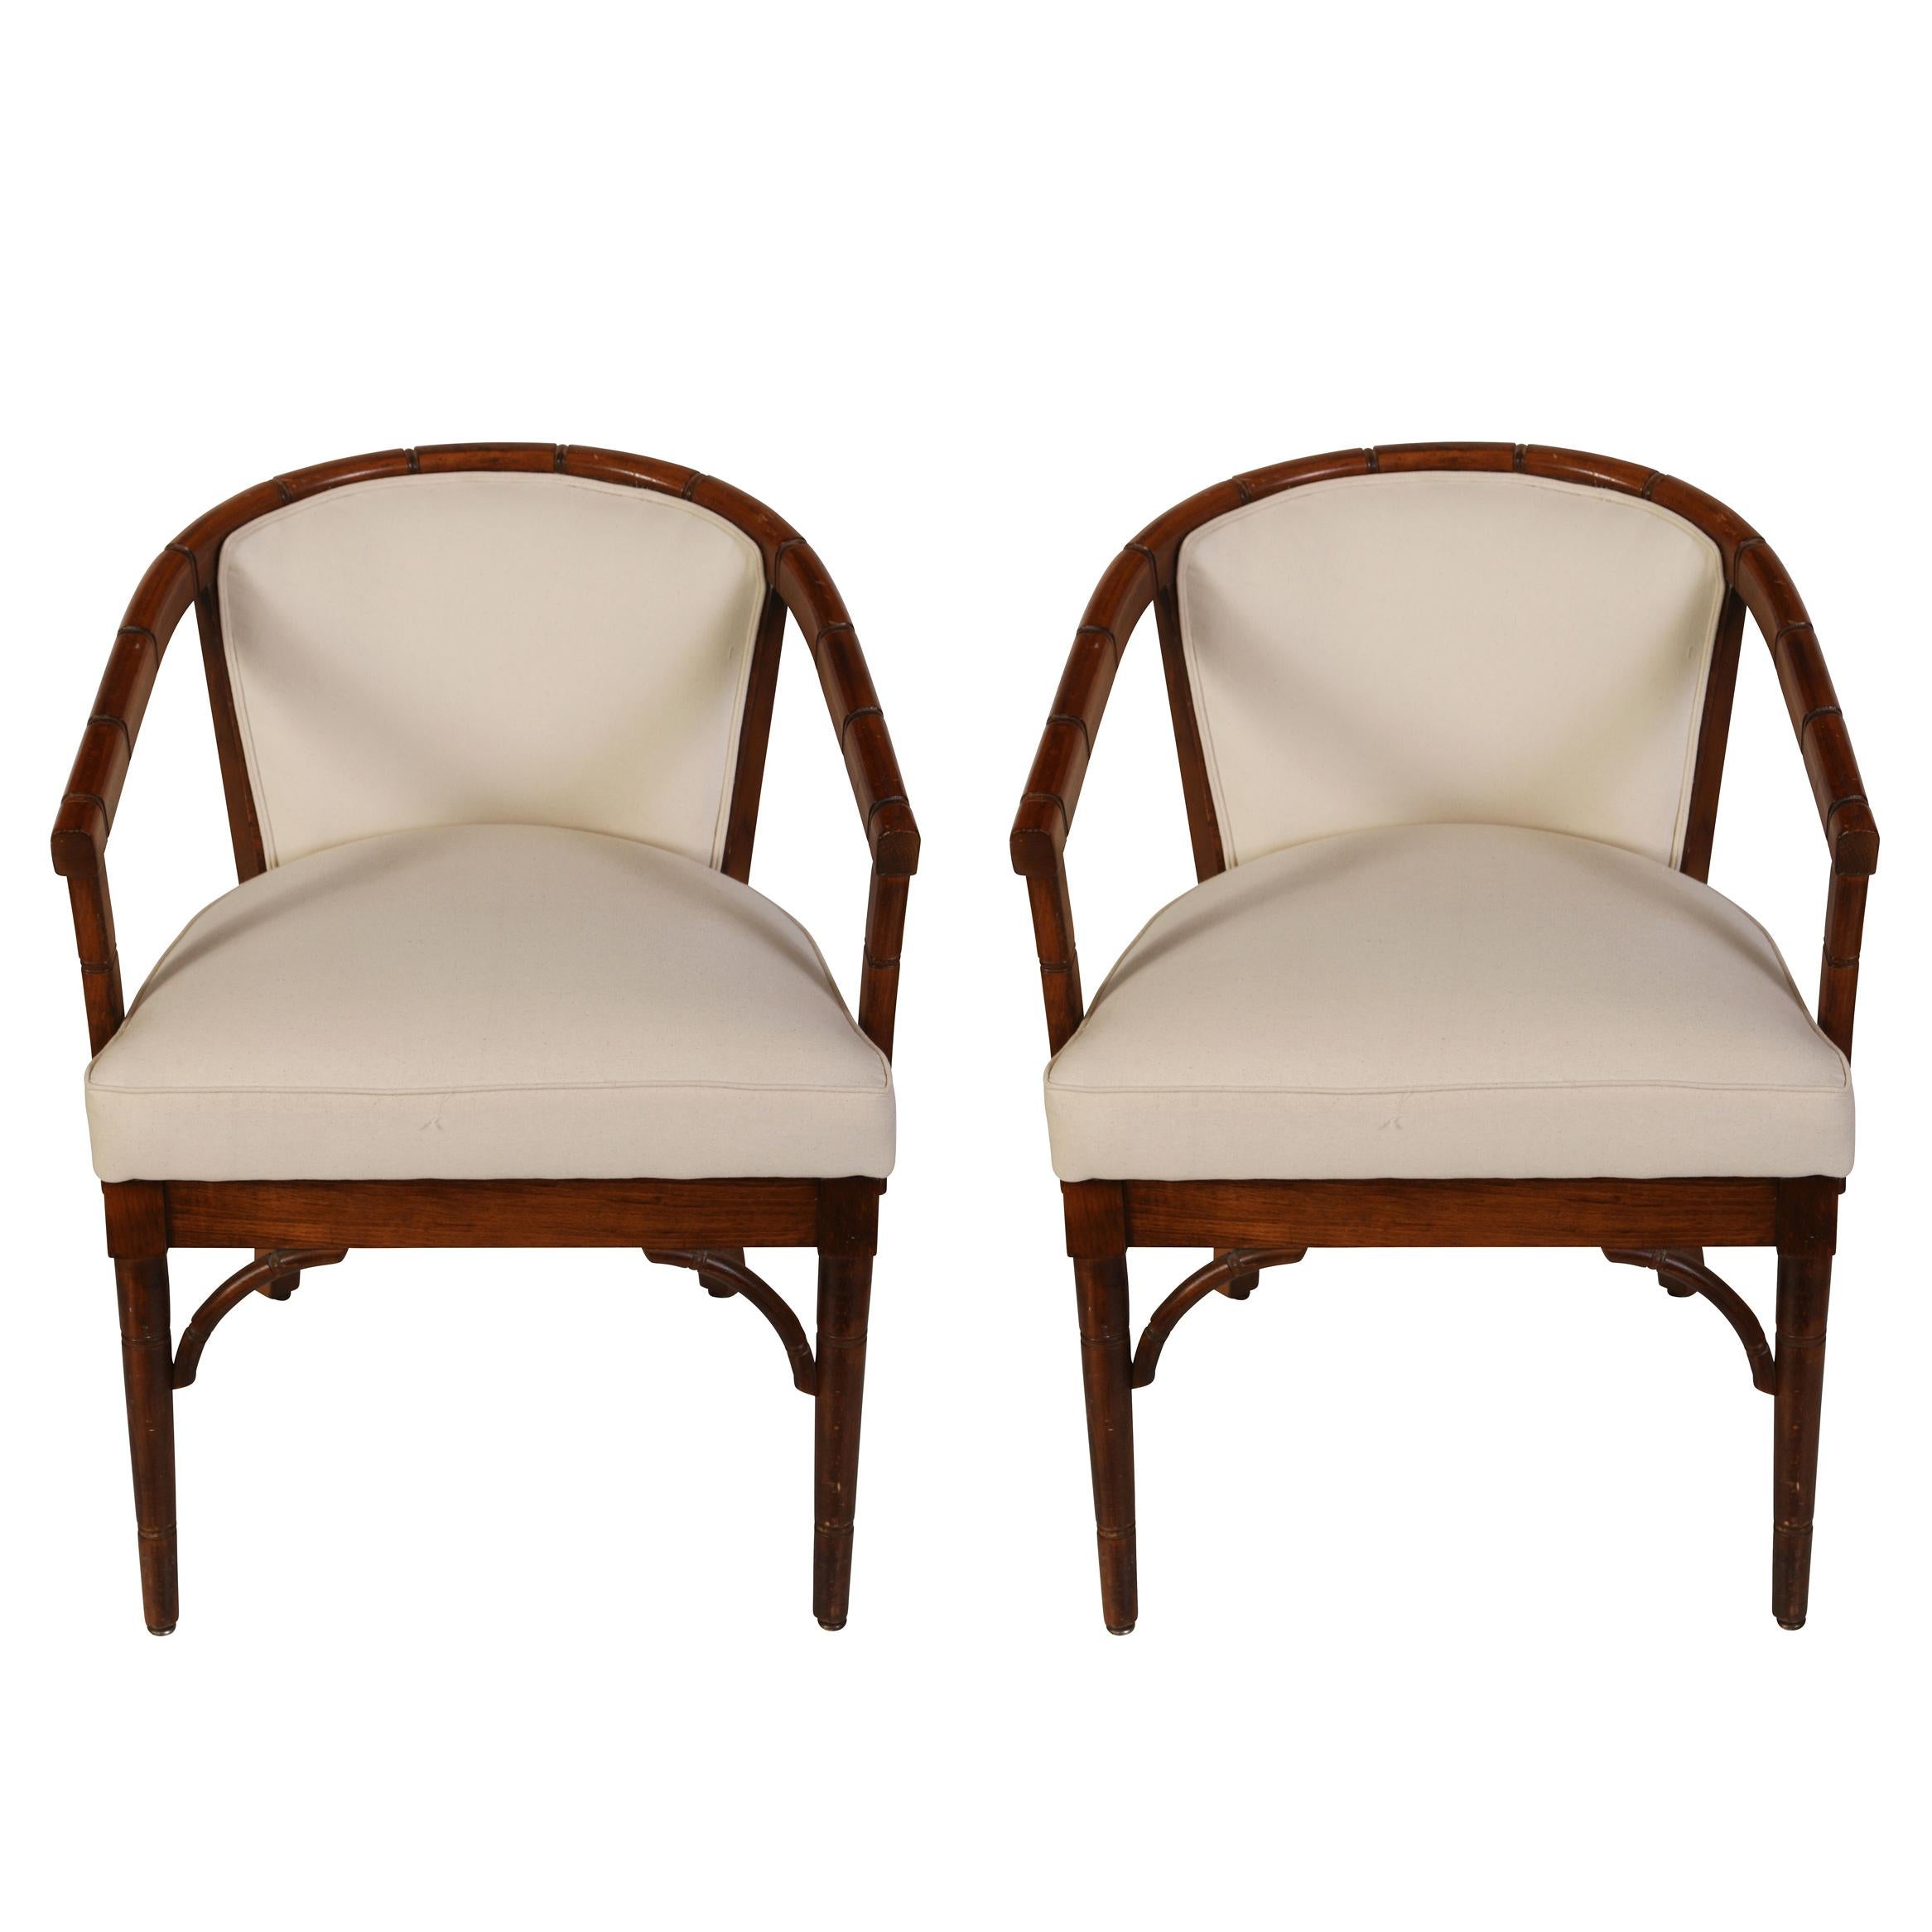 Ein stilvolles Paar Armlehnstühle aus Bambusimitat mit einer geschwungenen, festen Rückenlehne, einem festen Sitz und einem schönen Detail an der Schürze und an der Basis des Sitzes.  In schlichtem weißen Musselin gehüllt, ist dieses Duo bereit für